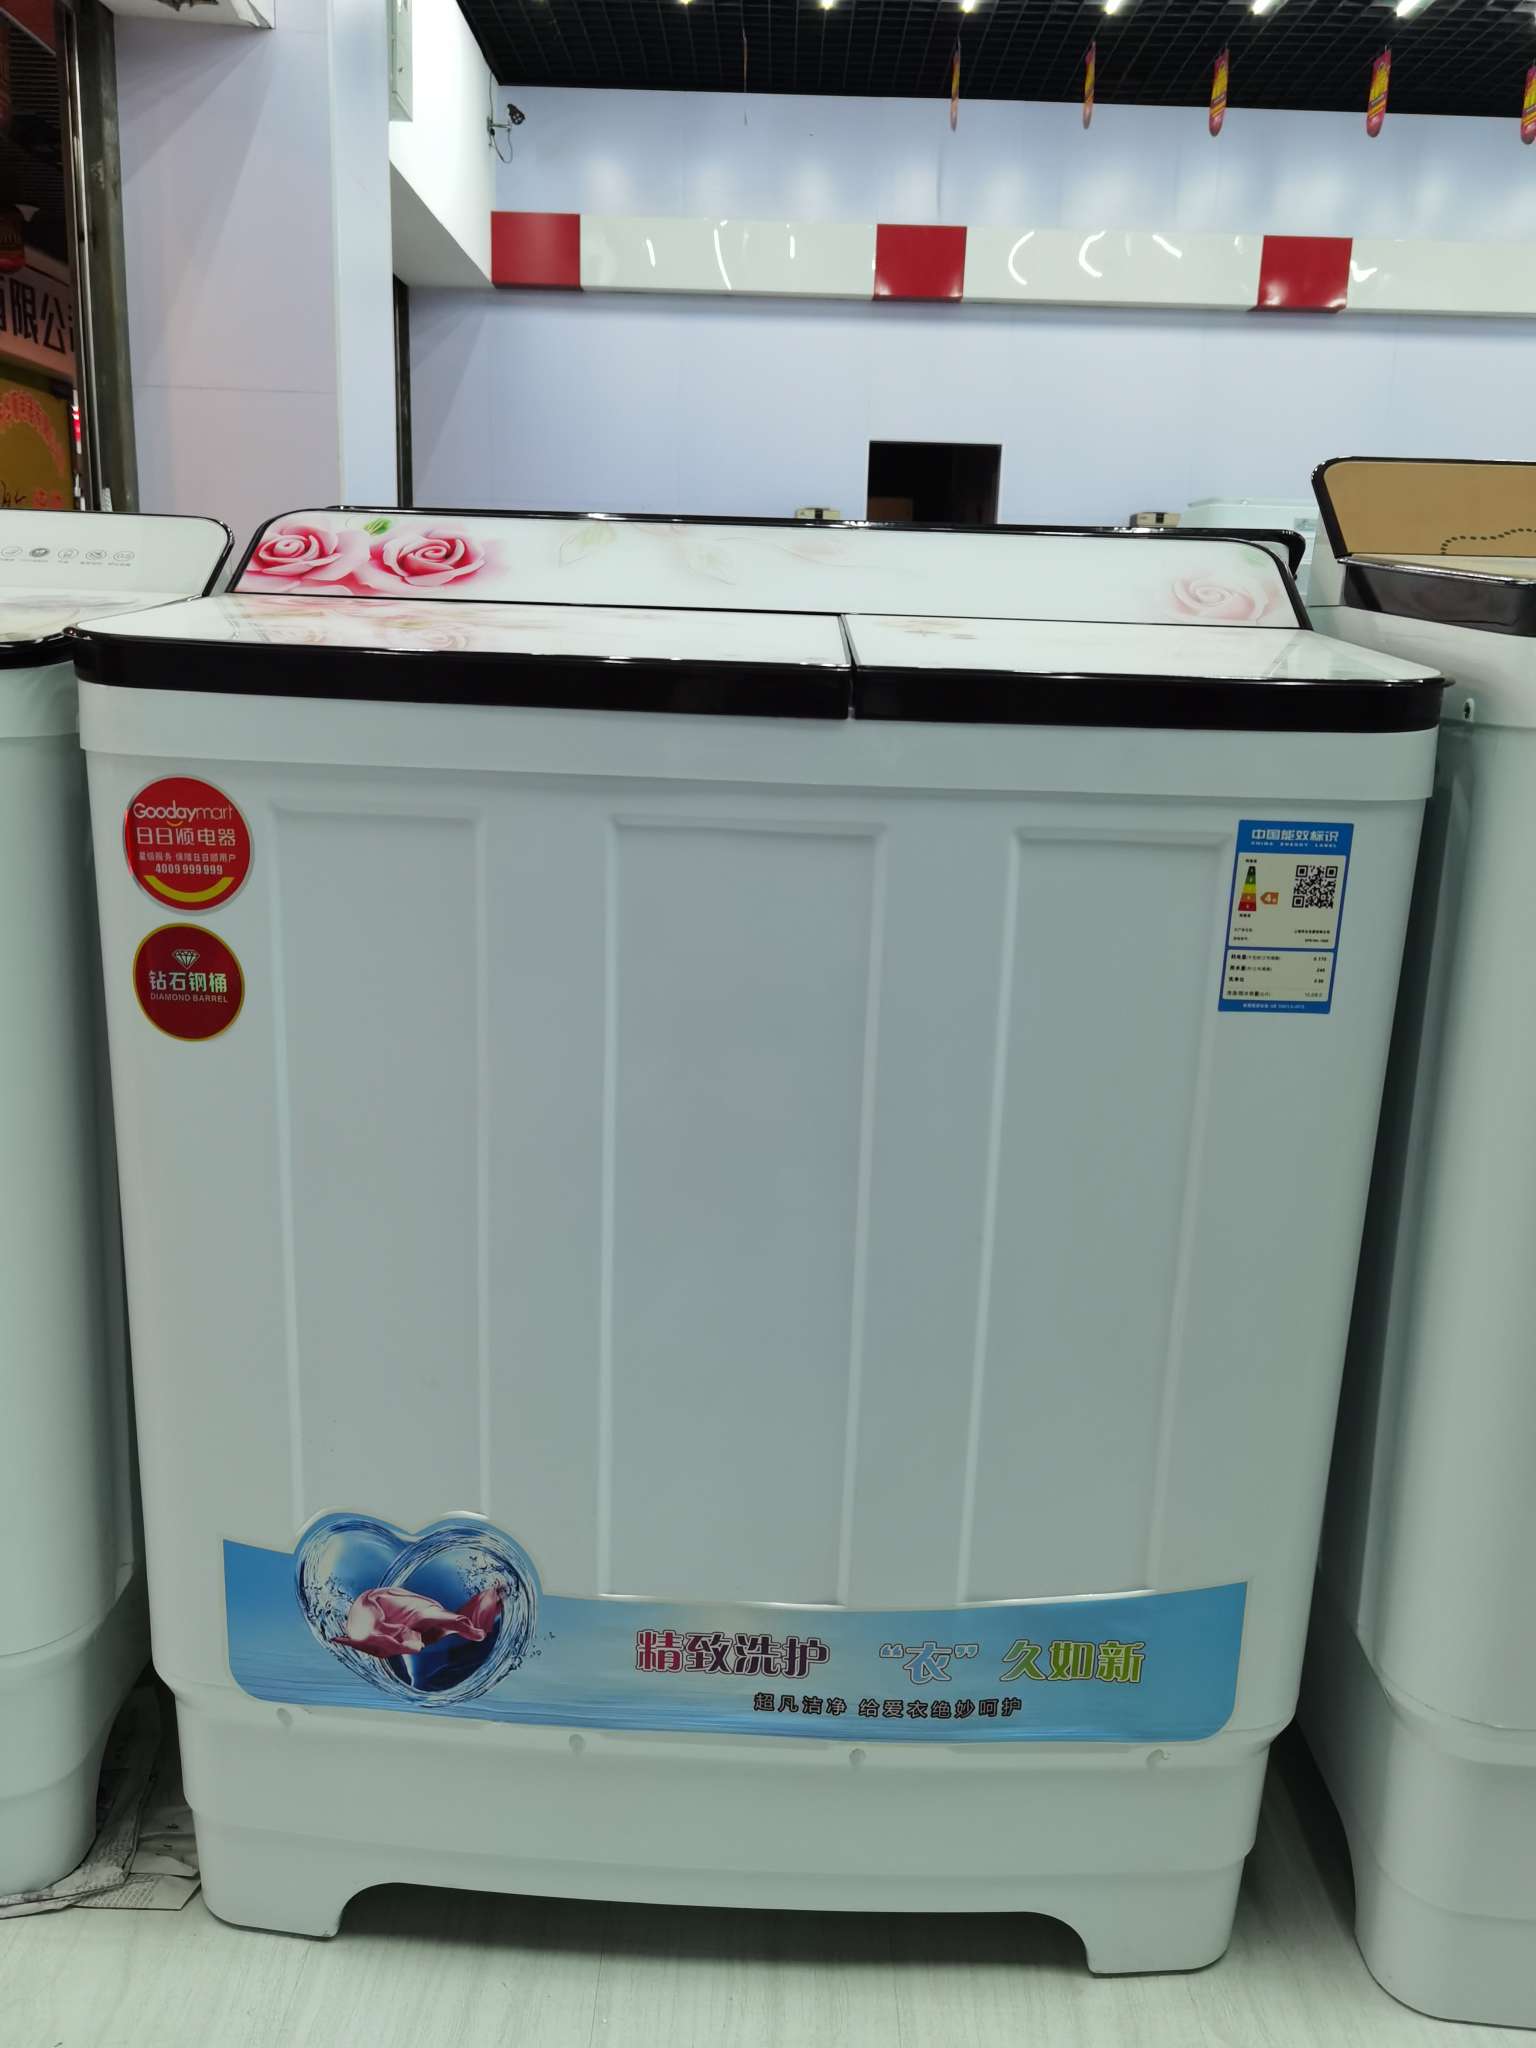 上海华生半自动洗衣机详情图2